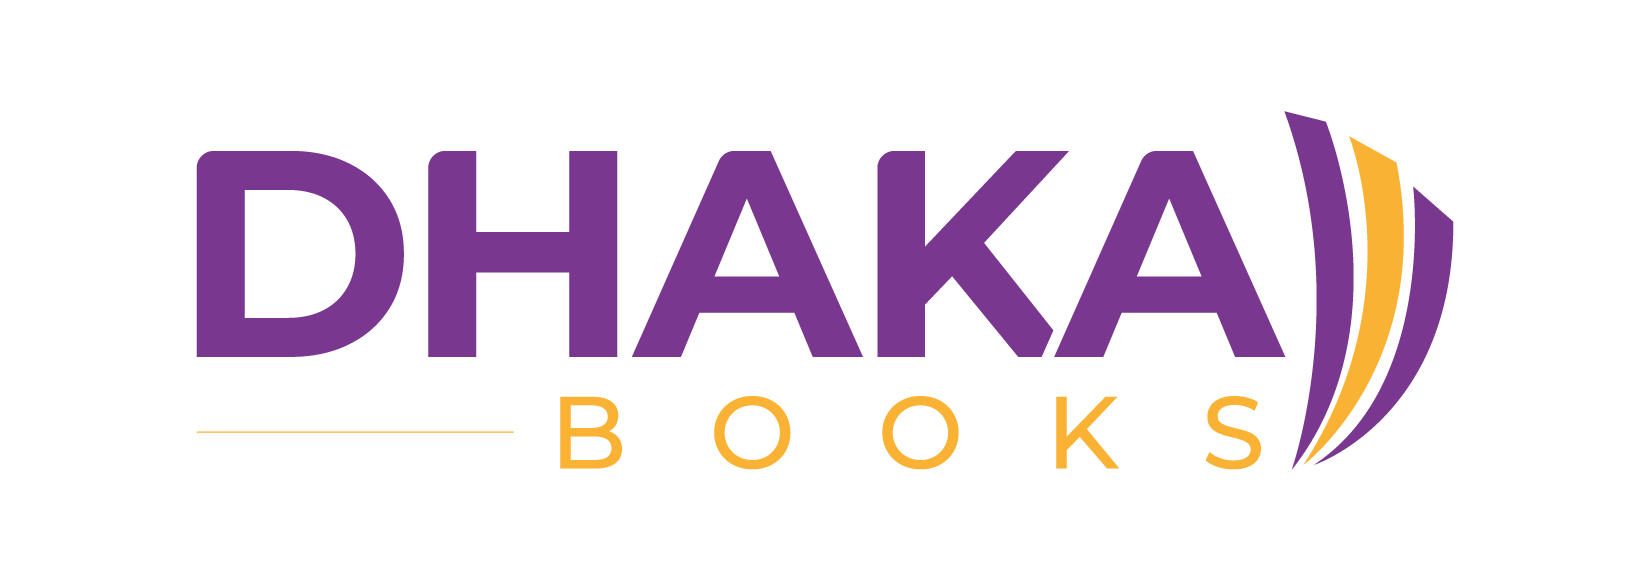 Dhak Booksd-03